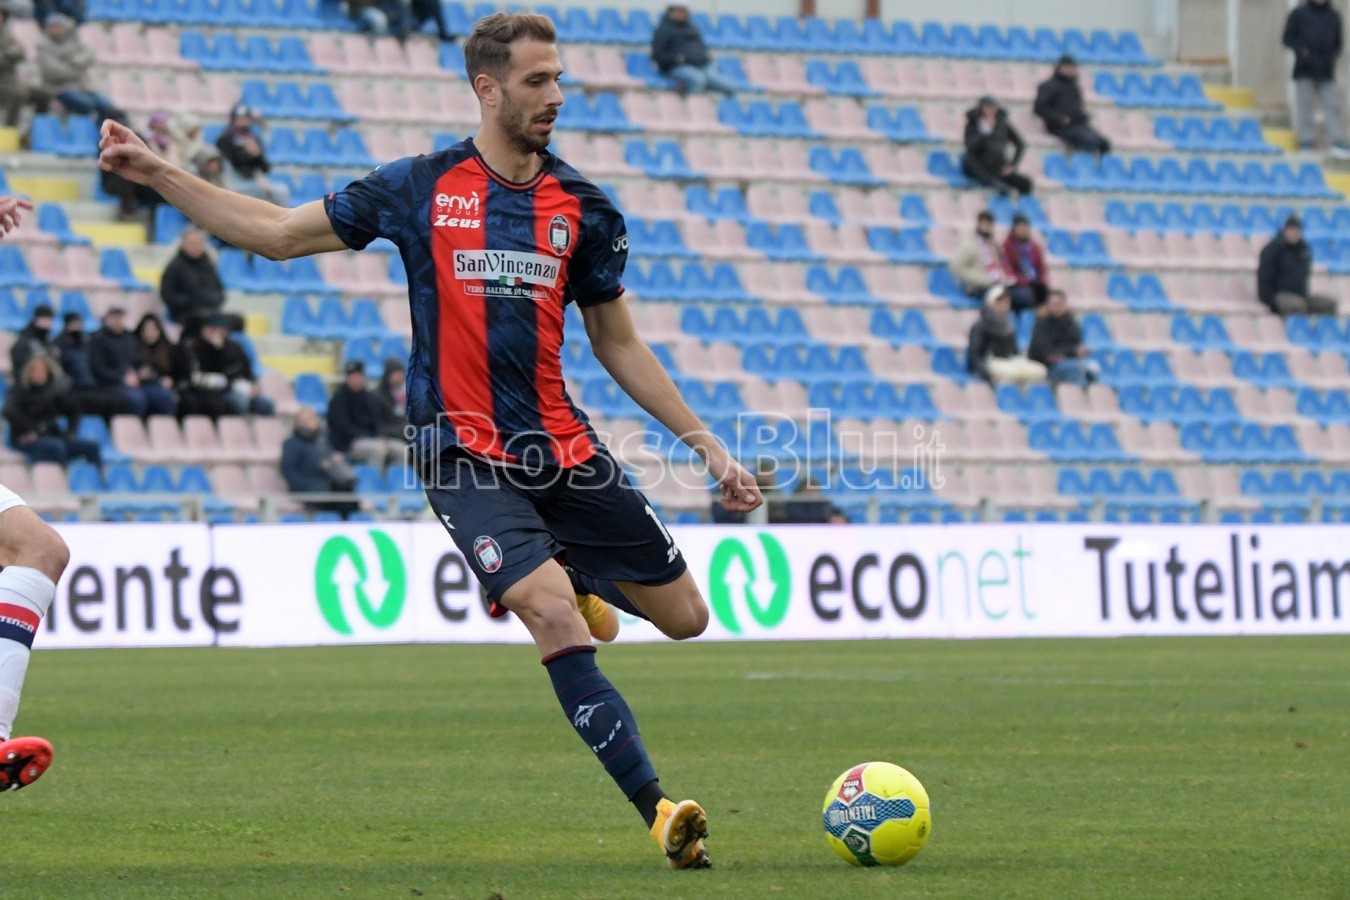 Crotone vs Potenza 0-0 - Serie C 2022-2023 - Rosito Andrea - (29 1 2023) - Cernigoi Iacopo